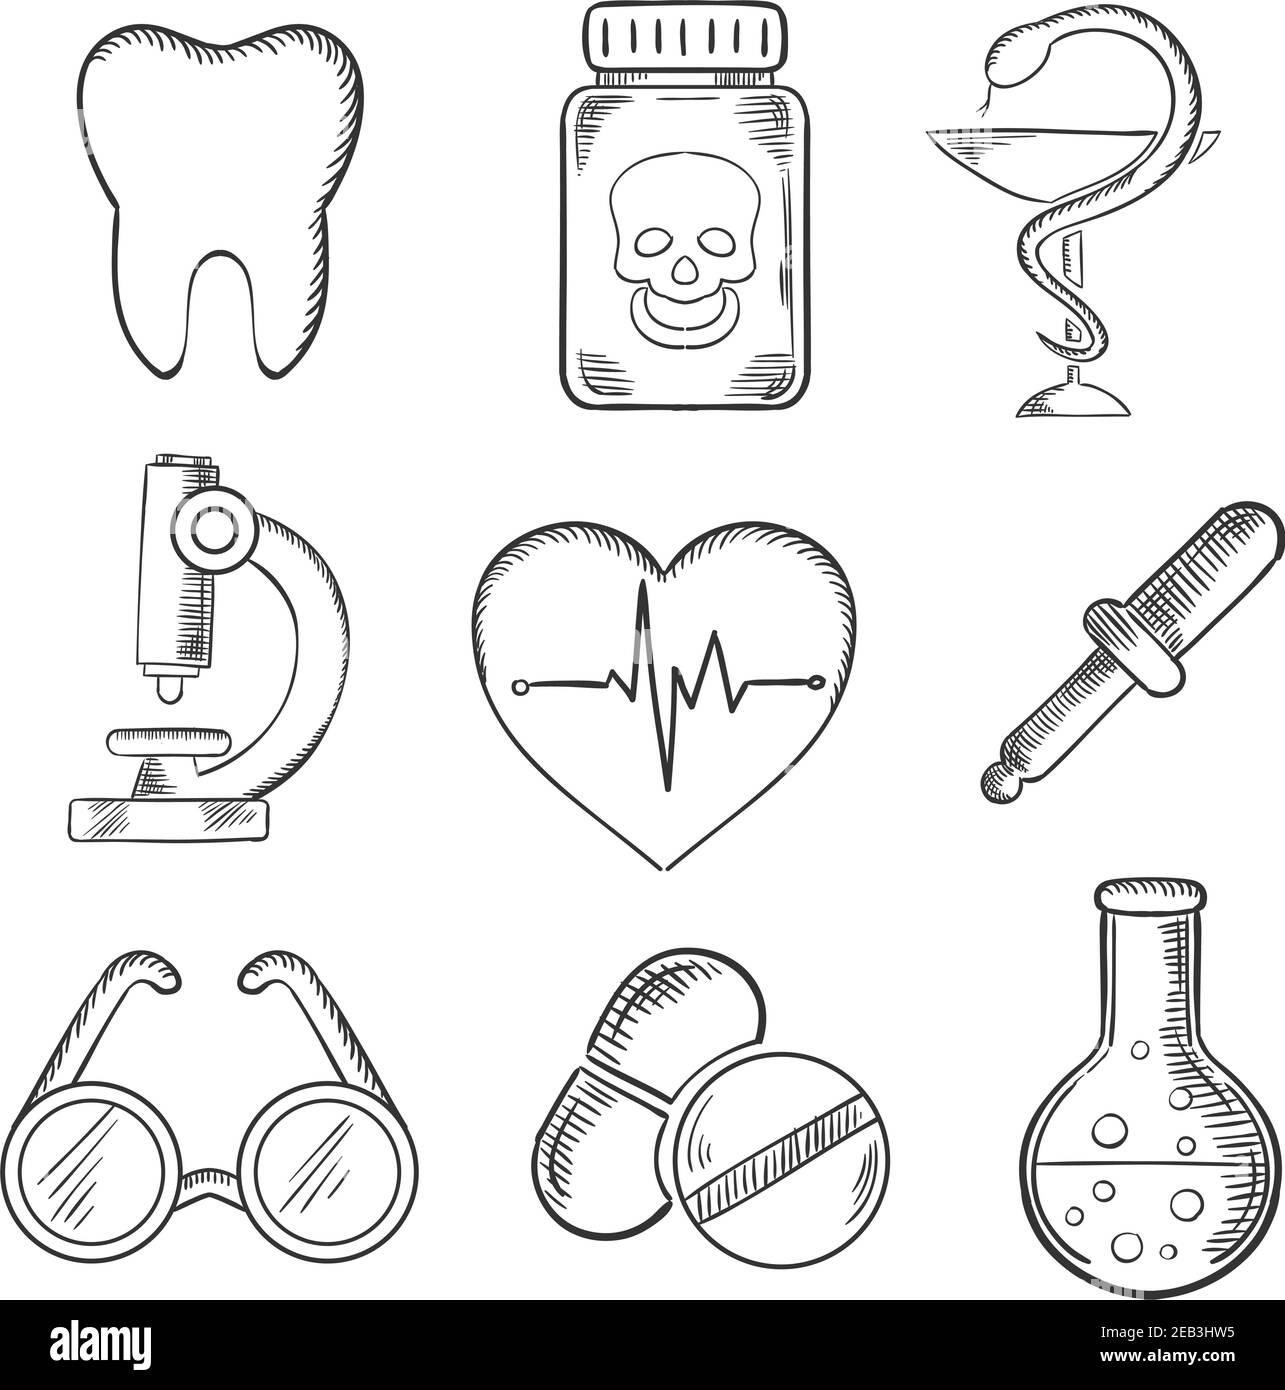 Medizin und Gesundheitswesen skizzierte Ikonen mit einem Zahn, Zahnmedizin, Gift, Mikroskop, Herz mit EKG, Brille, Pipette und Laborröhrchen. Skizzensty Stock Vektor